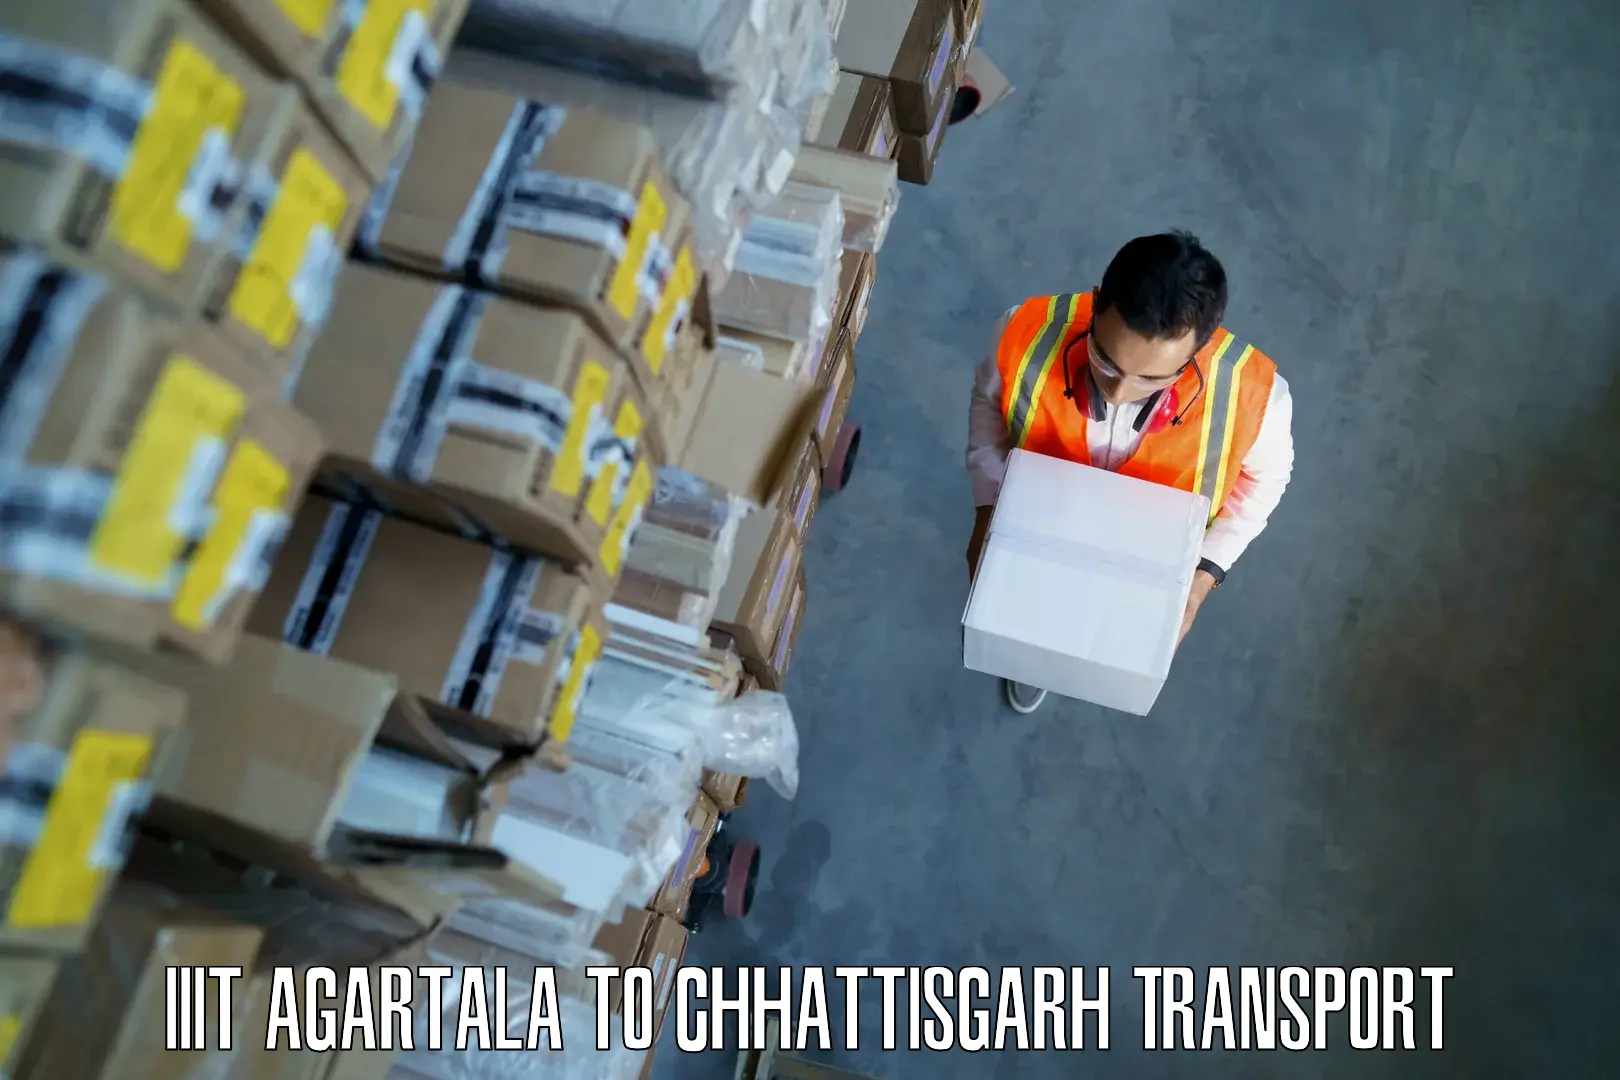 Cycle transportation service IIIT Agartala to Raigarh Chhattisgarh